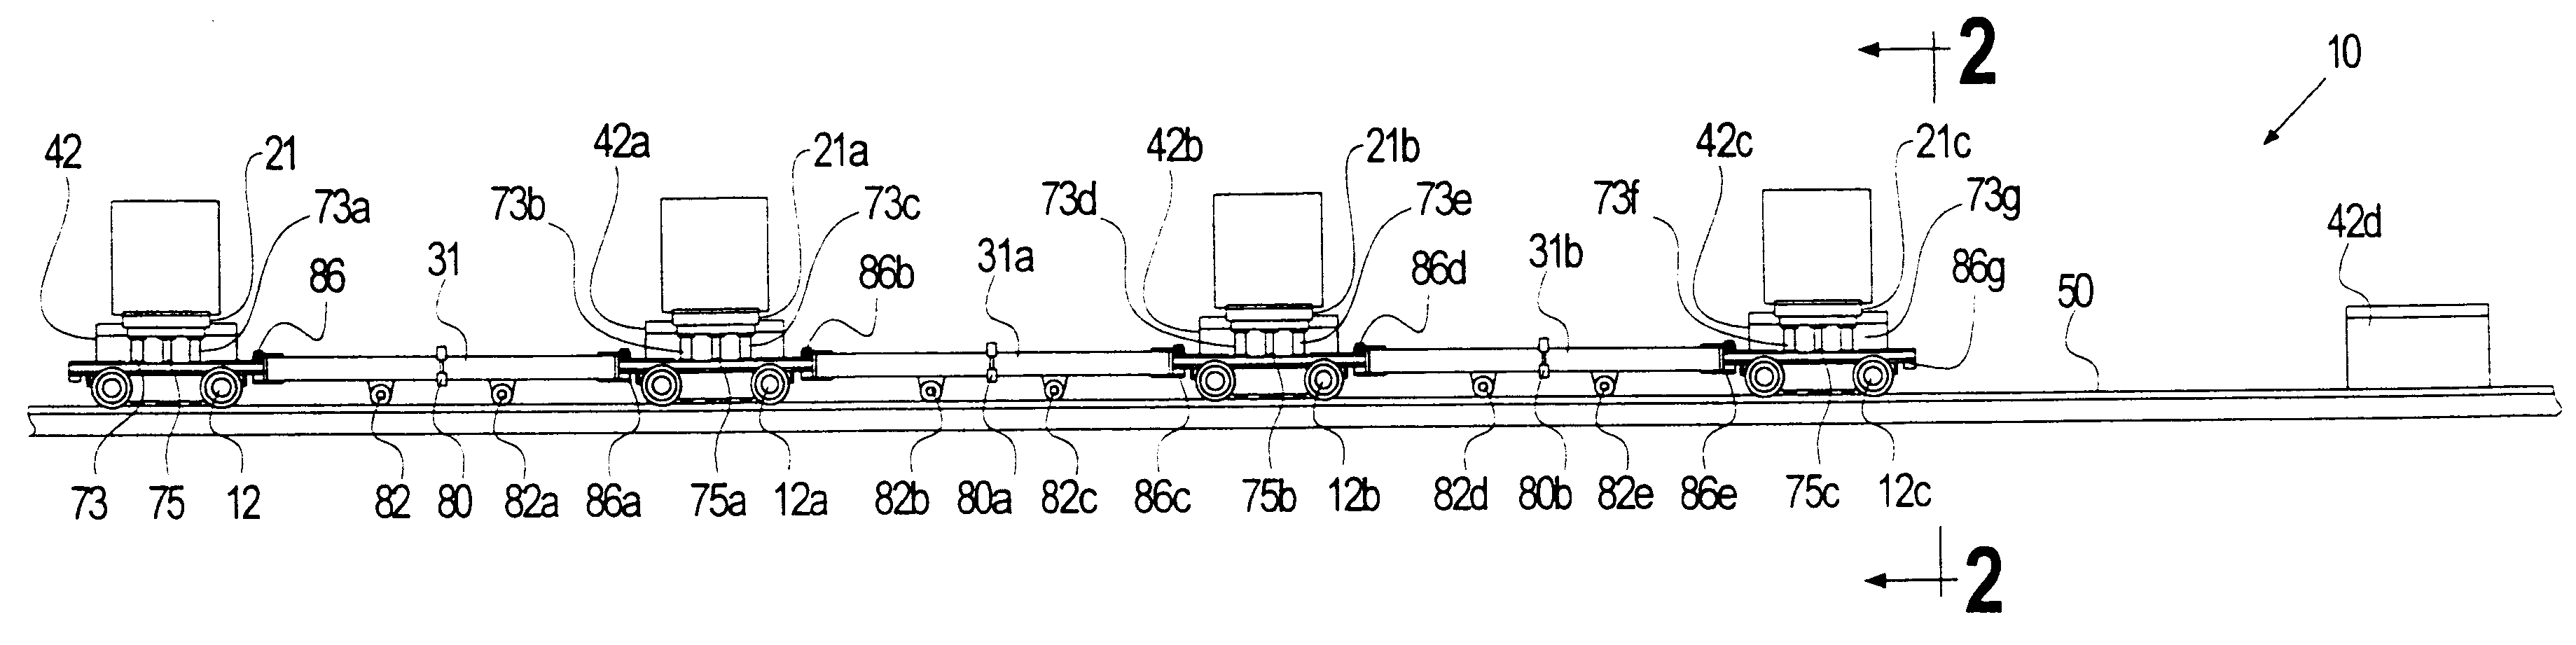 Shuttle car conveyor for conveyable material